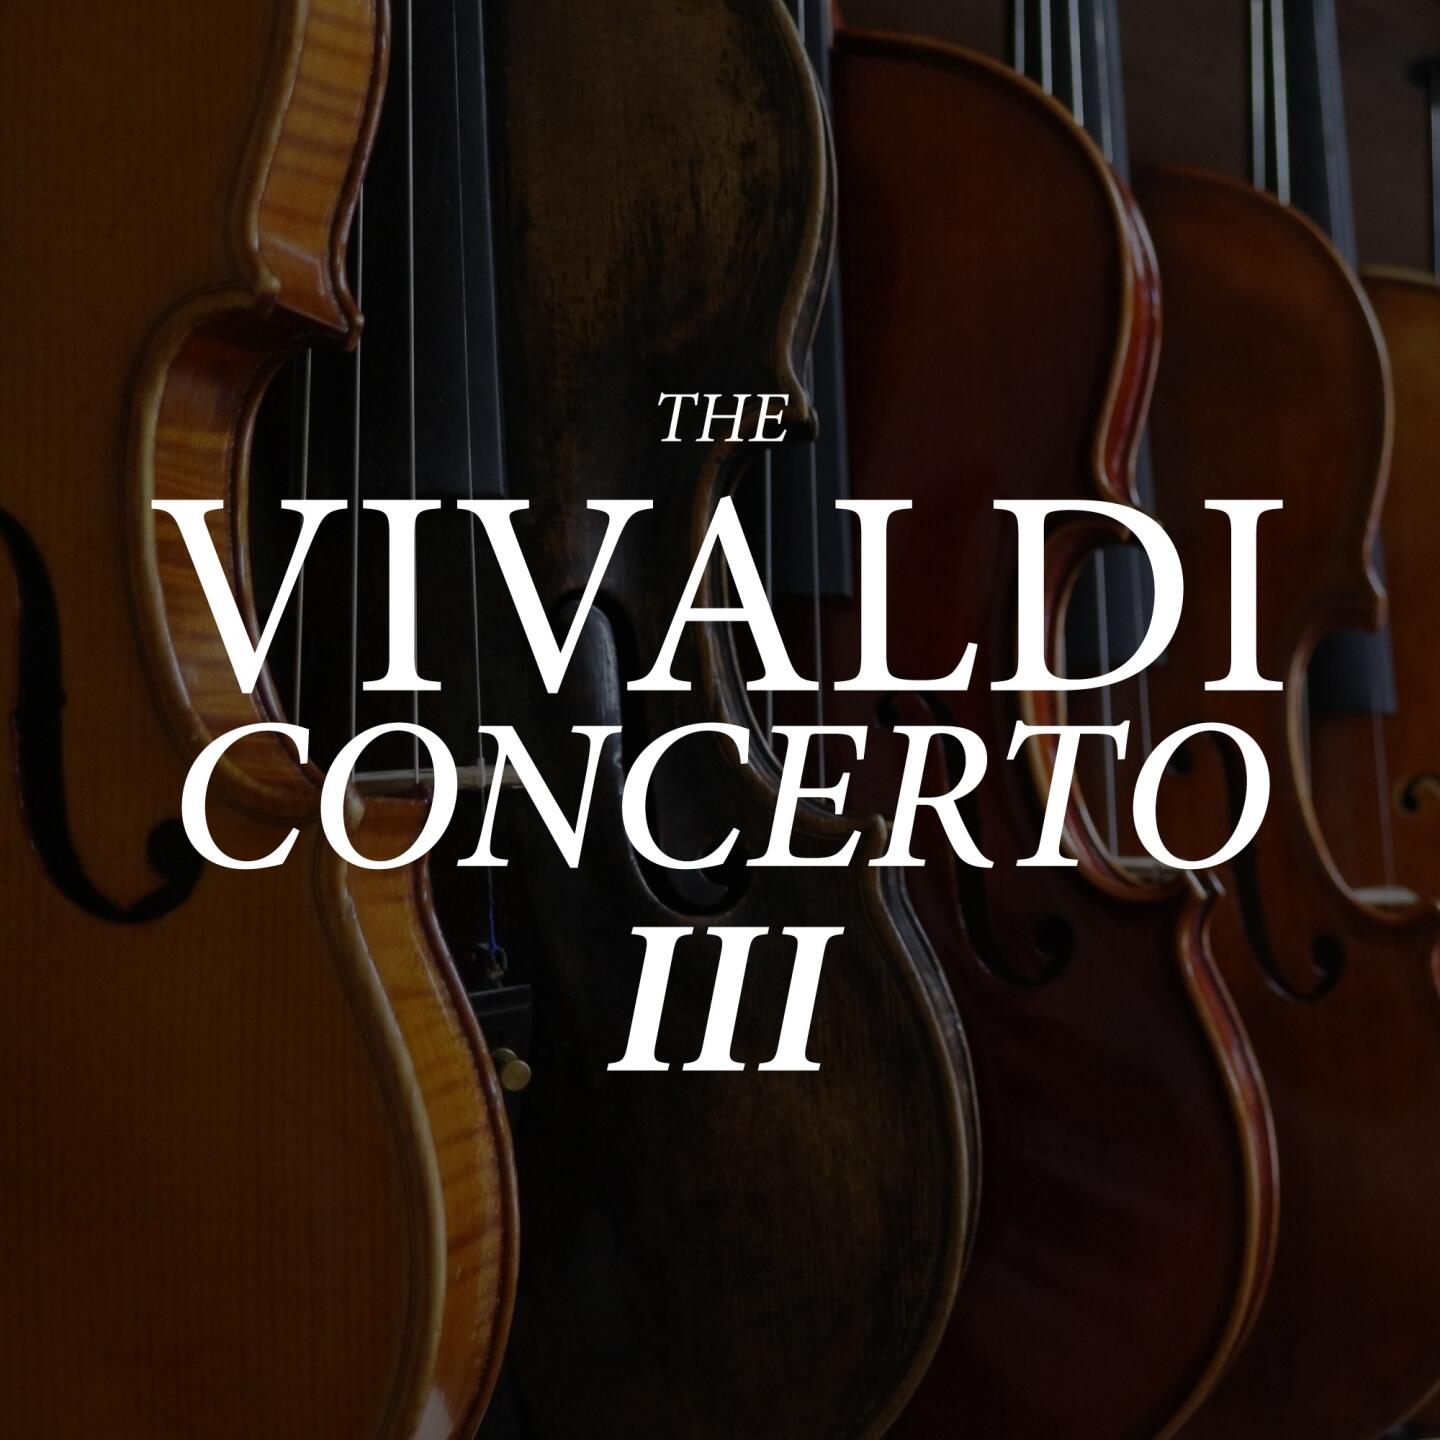 Antonio Vivaldi The Vivaldi Concerto Iii Iheart